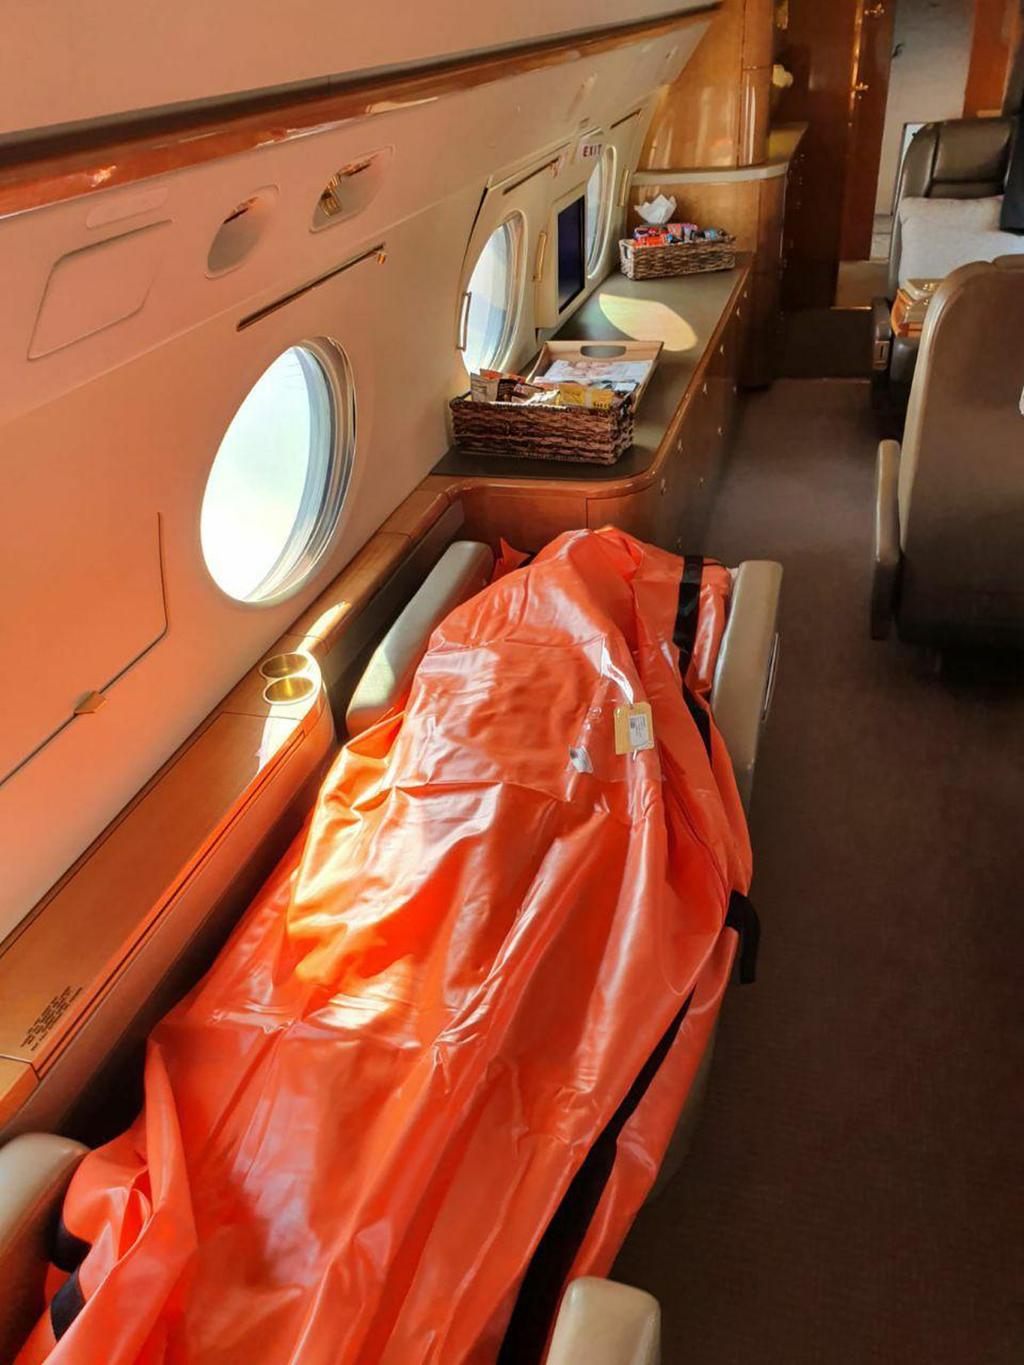 גופת קורונה במטוס מנהלים בניגוד להוראות משרד הבריאות